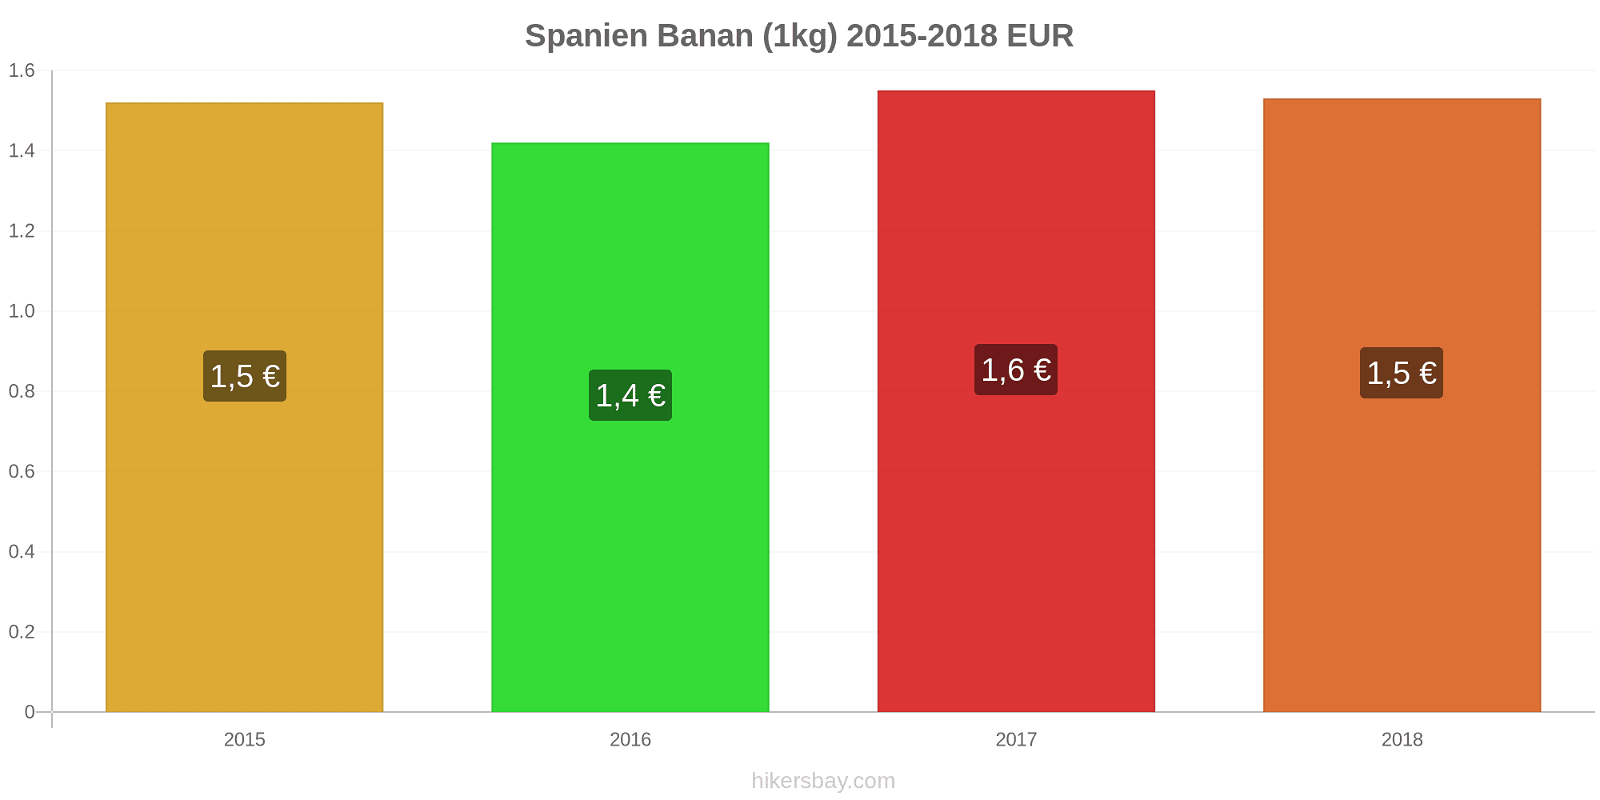 Spanien prisændringer Bananer (1kg) hikersbay.com